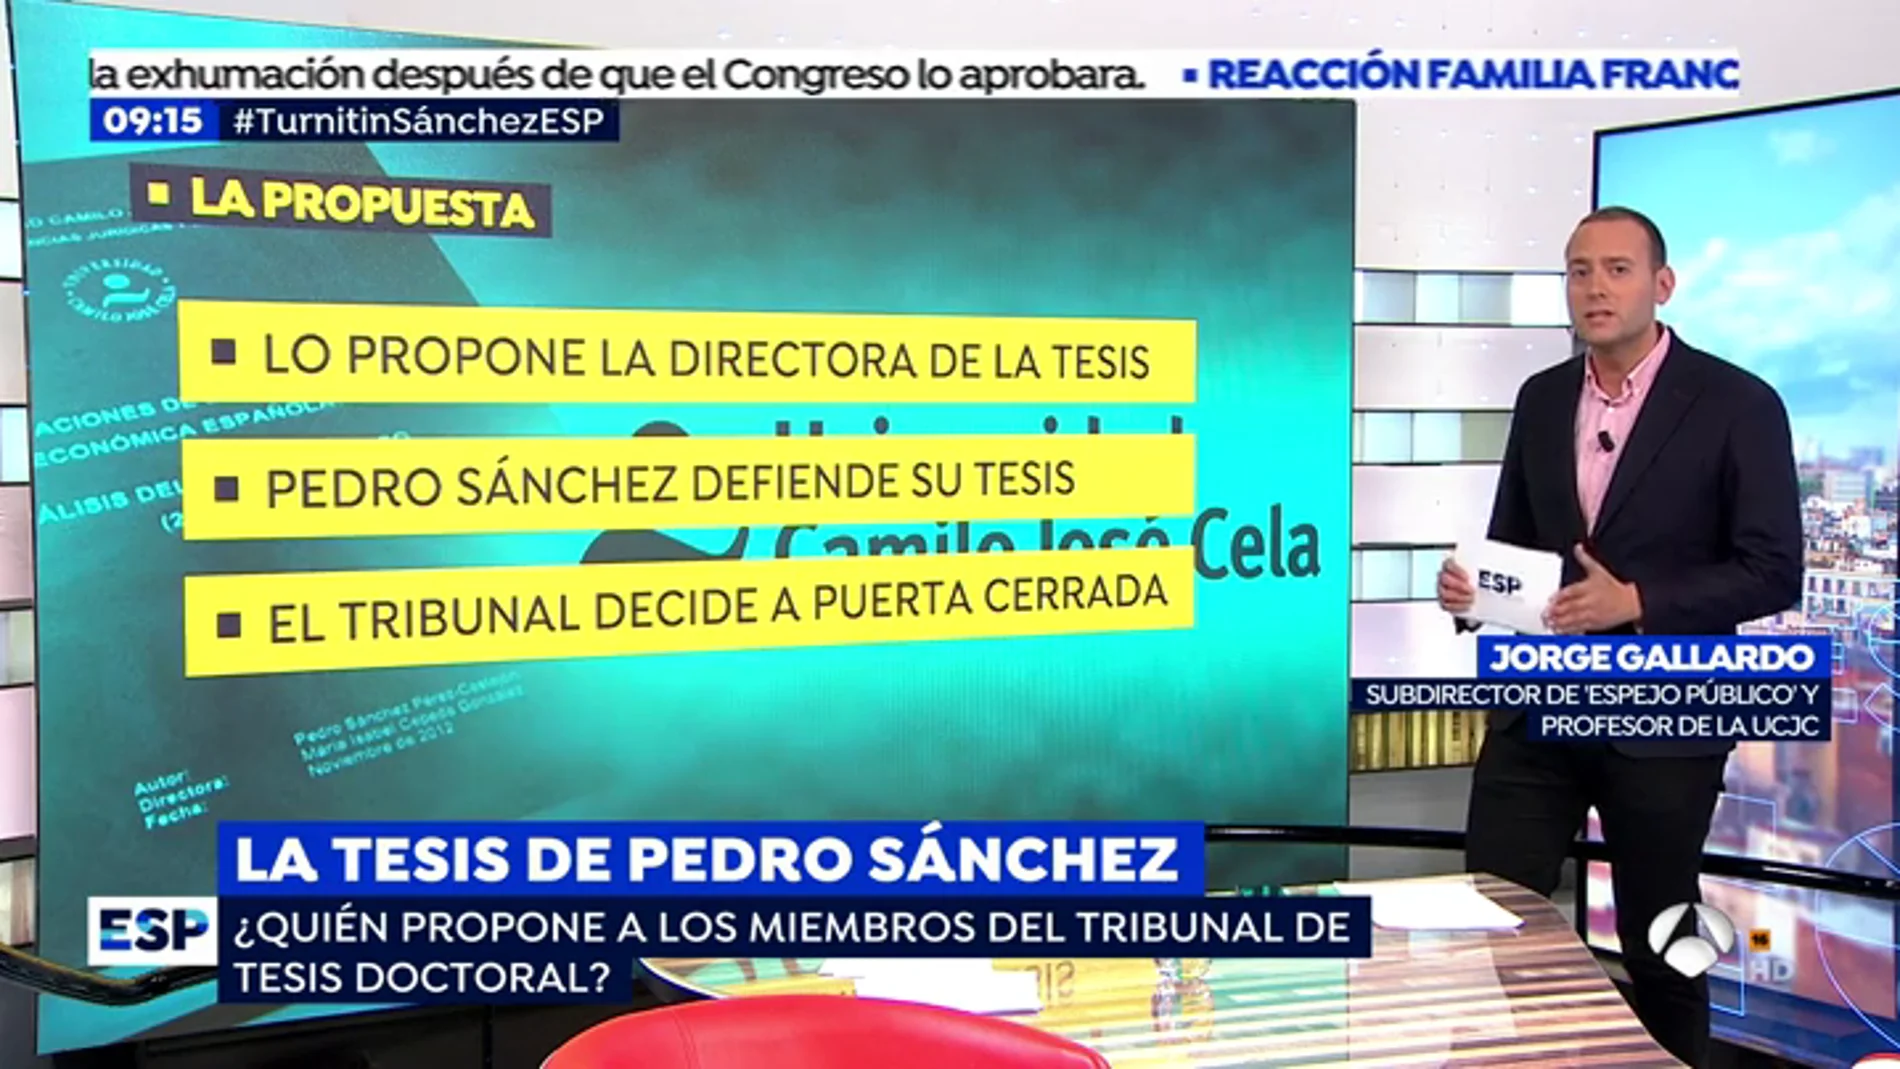 Jorge Gallardo, profesor de la UCJC y subdirector de 'Espejo Público' explica cómo se formó el tribunal que evaluó la tesis de Pedro Sánchez